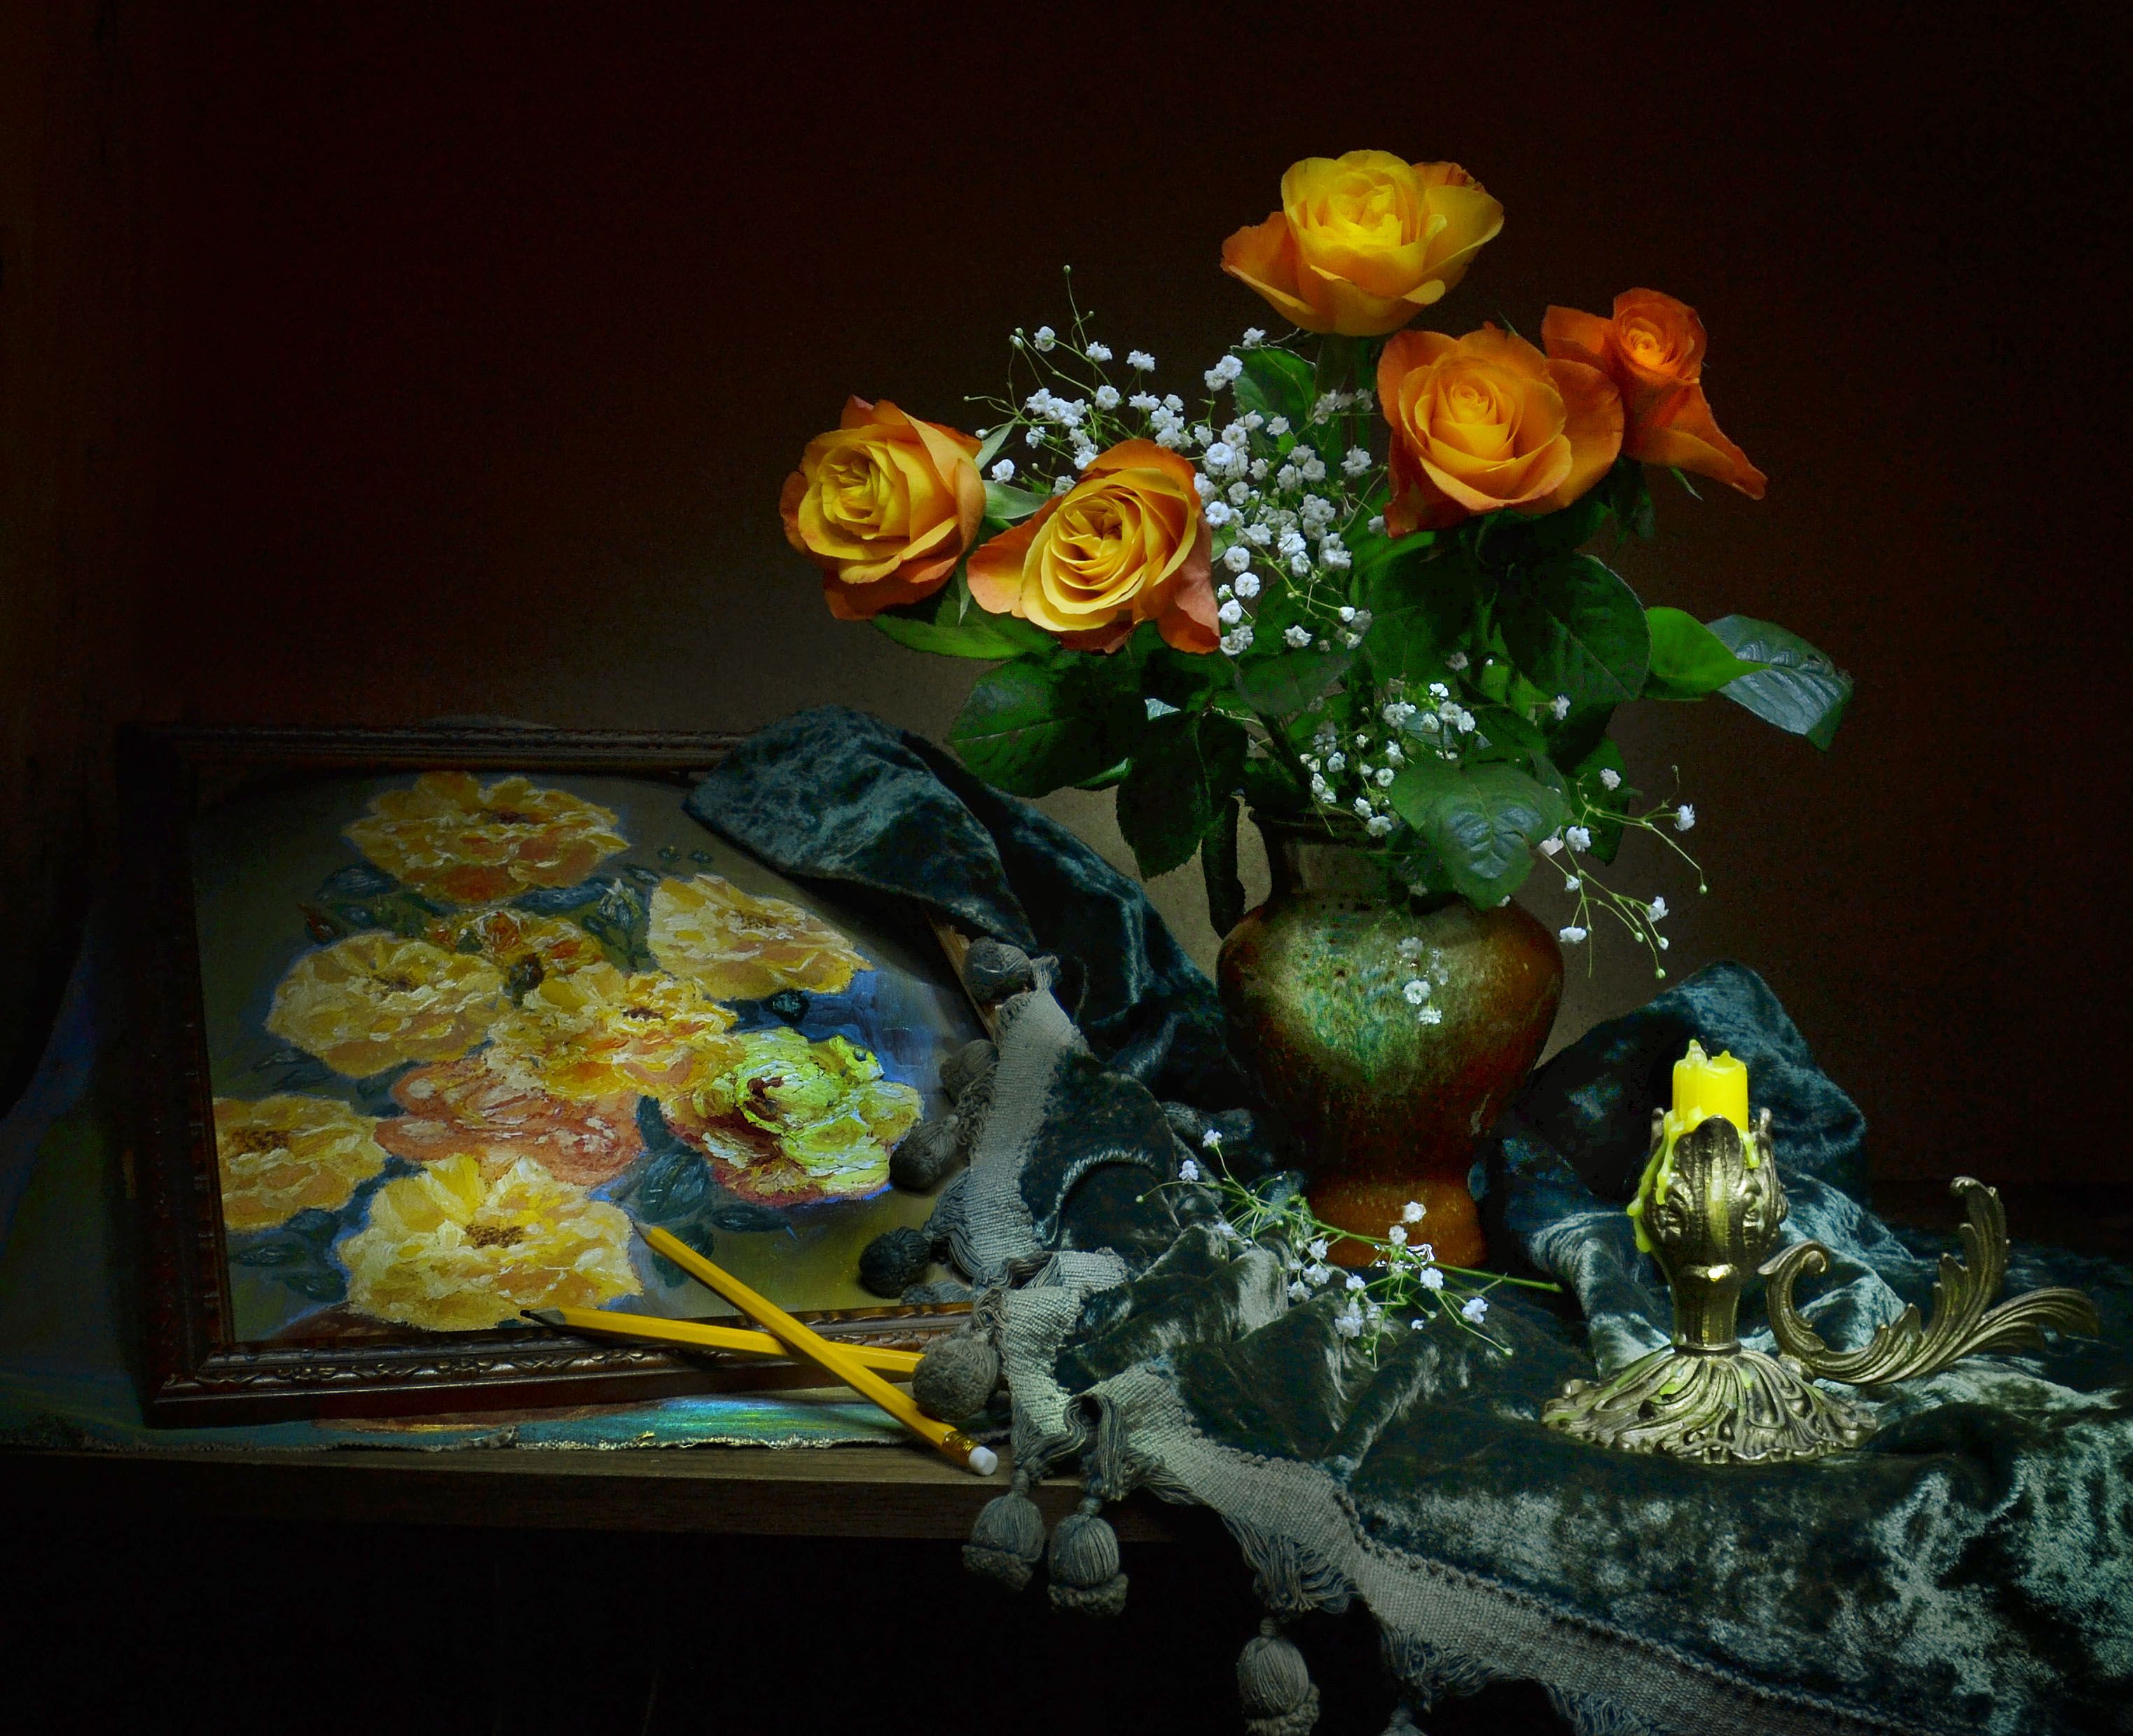 бронза,still life, натюрморт , ваза, драпировка, живопись, зима, керамика, масло, нарисую розы, подсвечник, розы,  фото натюрморт, холст, цветы, Колова Валентина